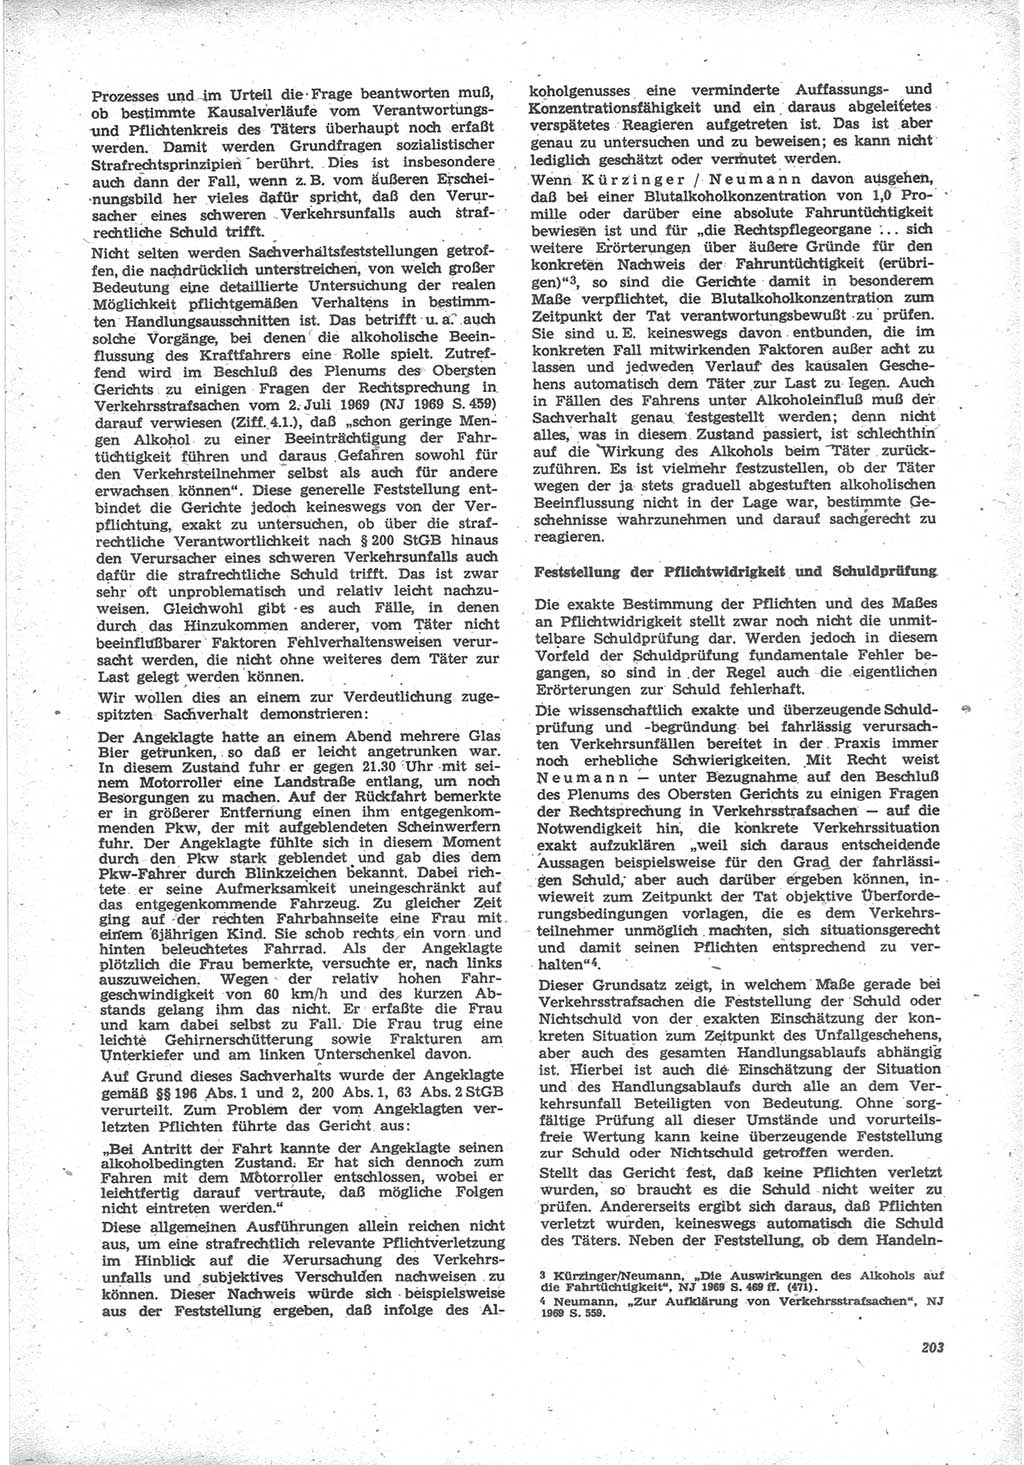 Neue Justiz (NJ), Zeitschrift für Recht und Rechtswissenschaft [Deutsche Demokratische Republik (DDR)], 24. Jahrgang 1970, Seite 203 (NJ DDR 1970, S. 203)